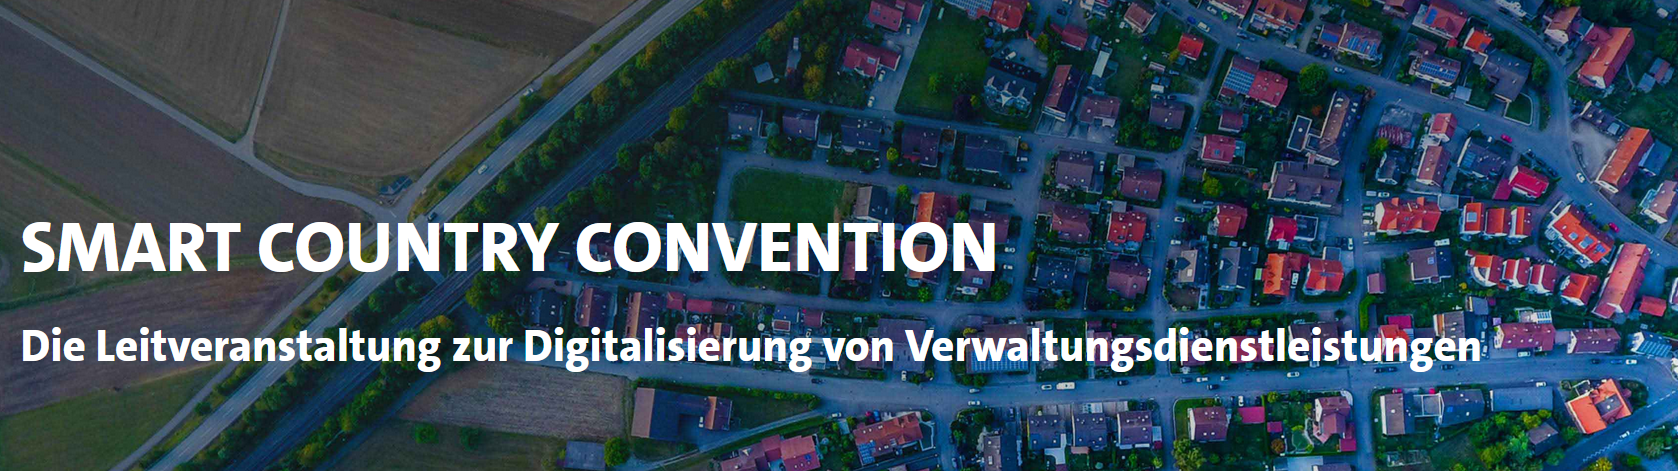 Header für die Smart Country Convention (SCCON)